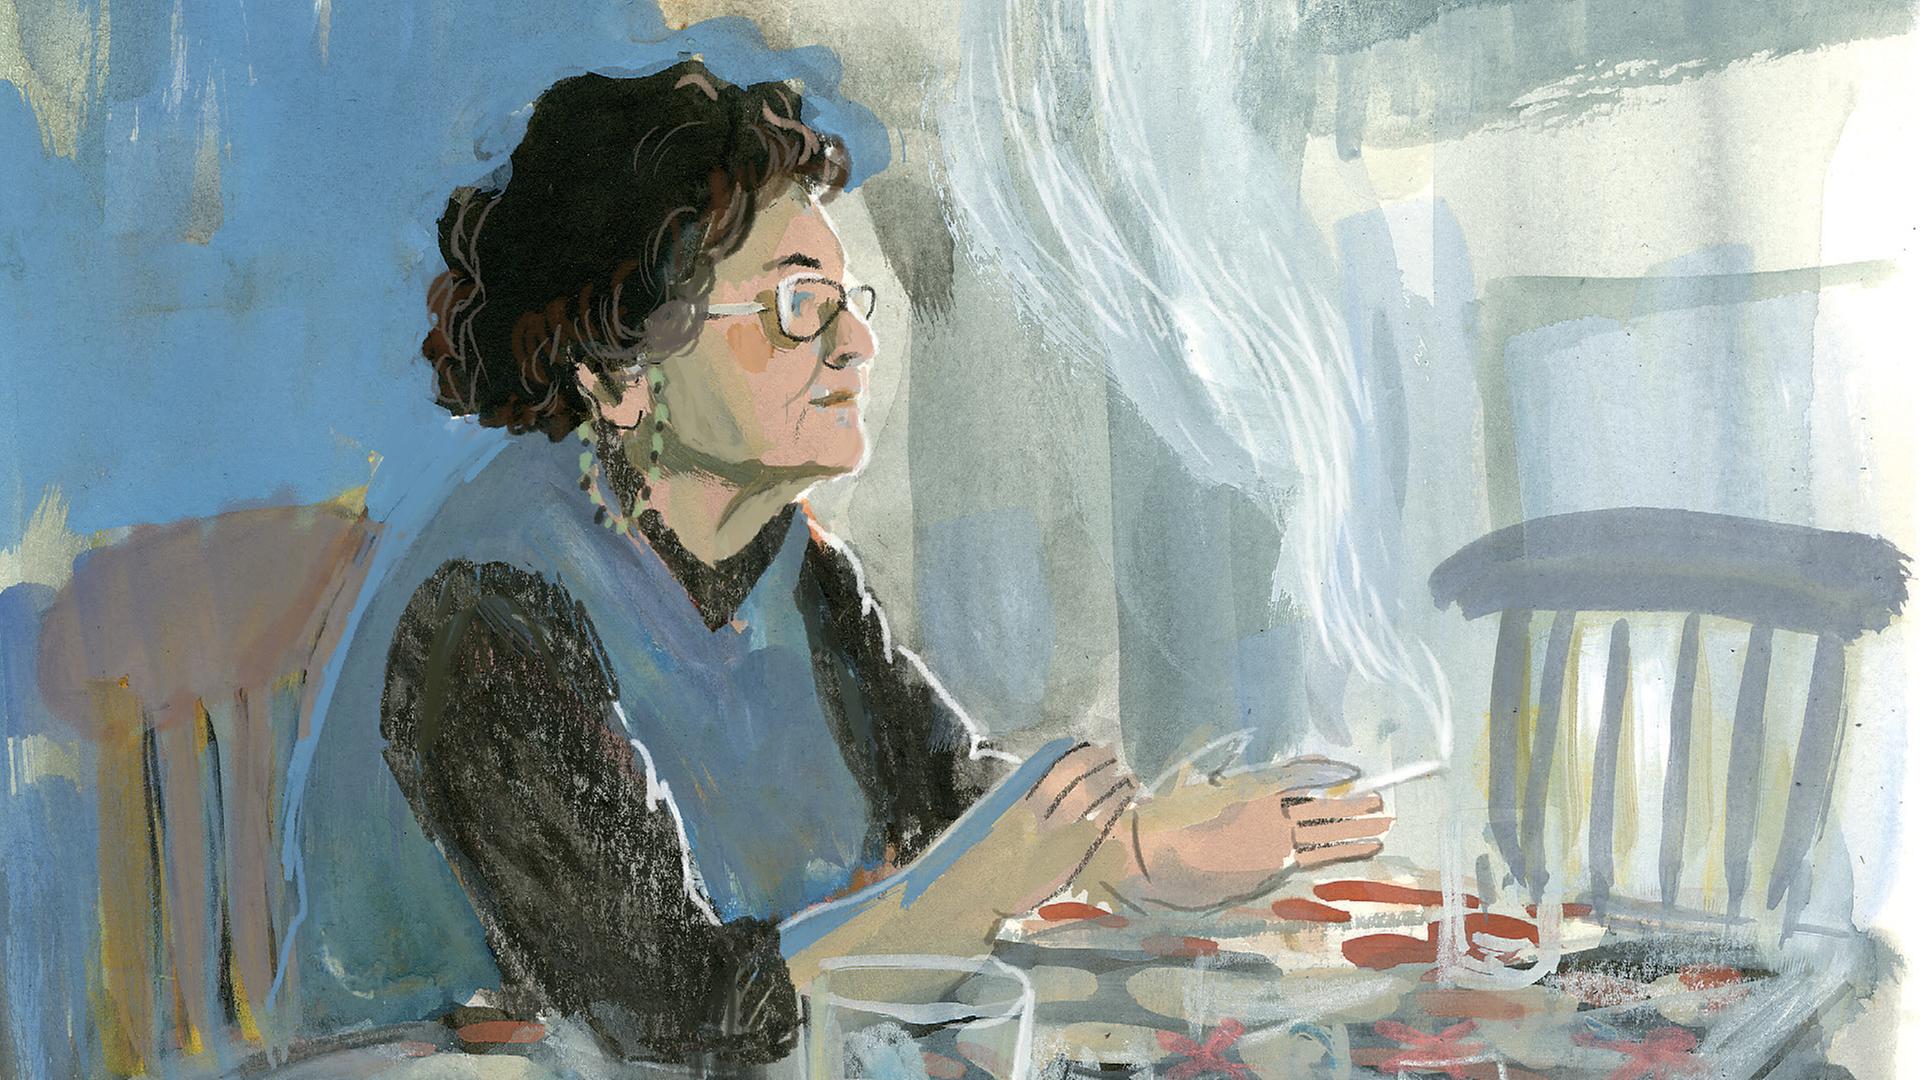 Eine illustrierte Seite aus der Graphic Novel "Die Farbe der Erinnerung" von der Illustratorin Barbara Yelin zeigt eine ältere Frau rauchend an einem Küchentisch.